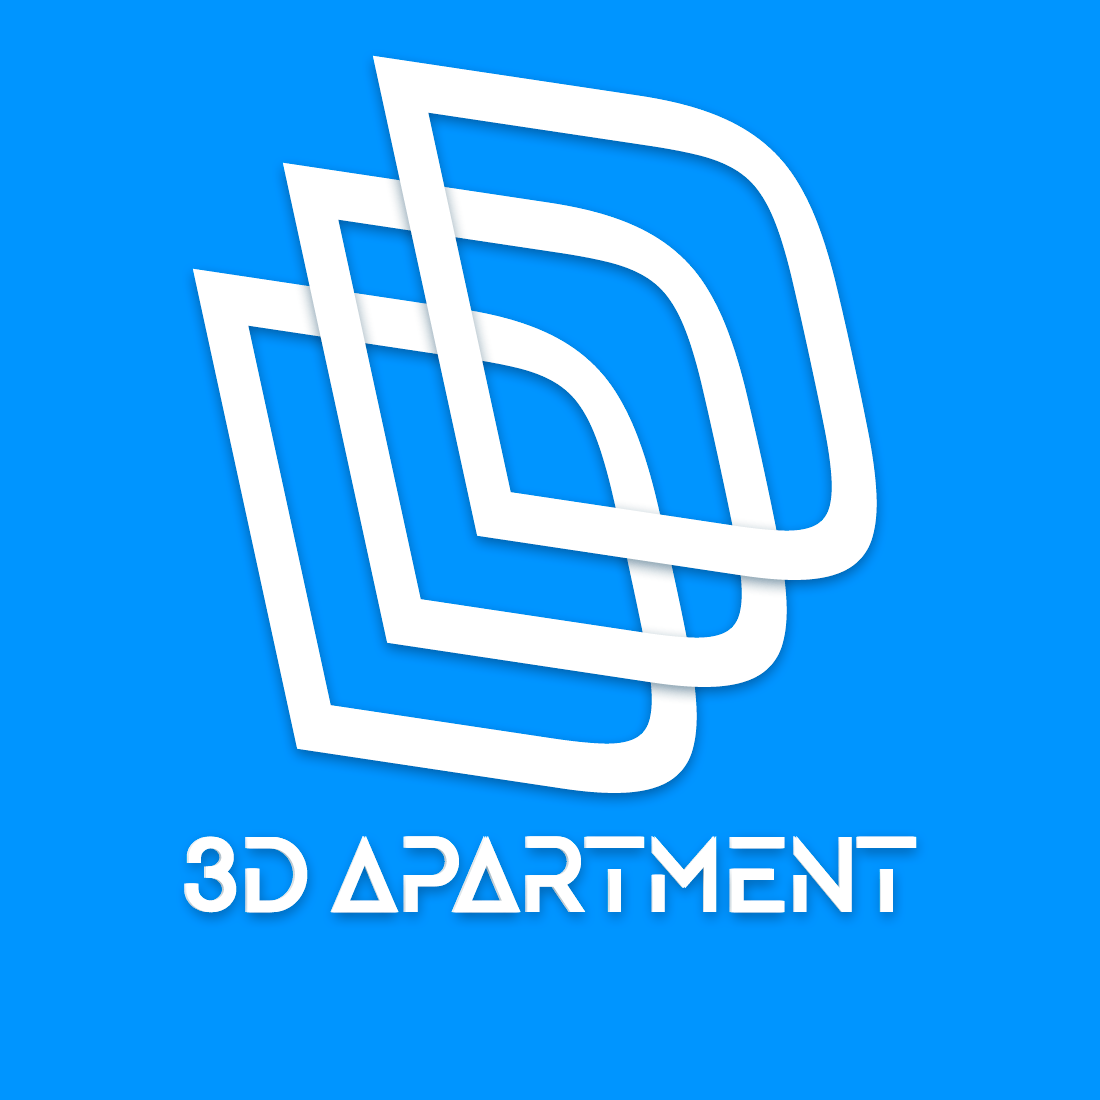 Apartment Logo - 3D Apartment